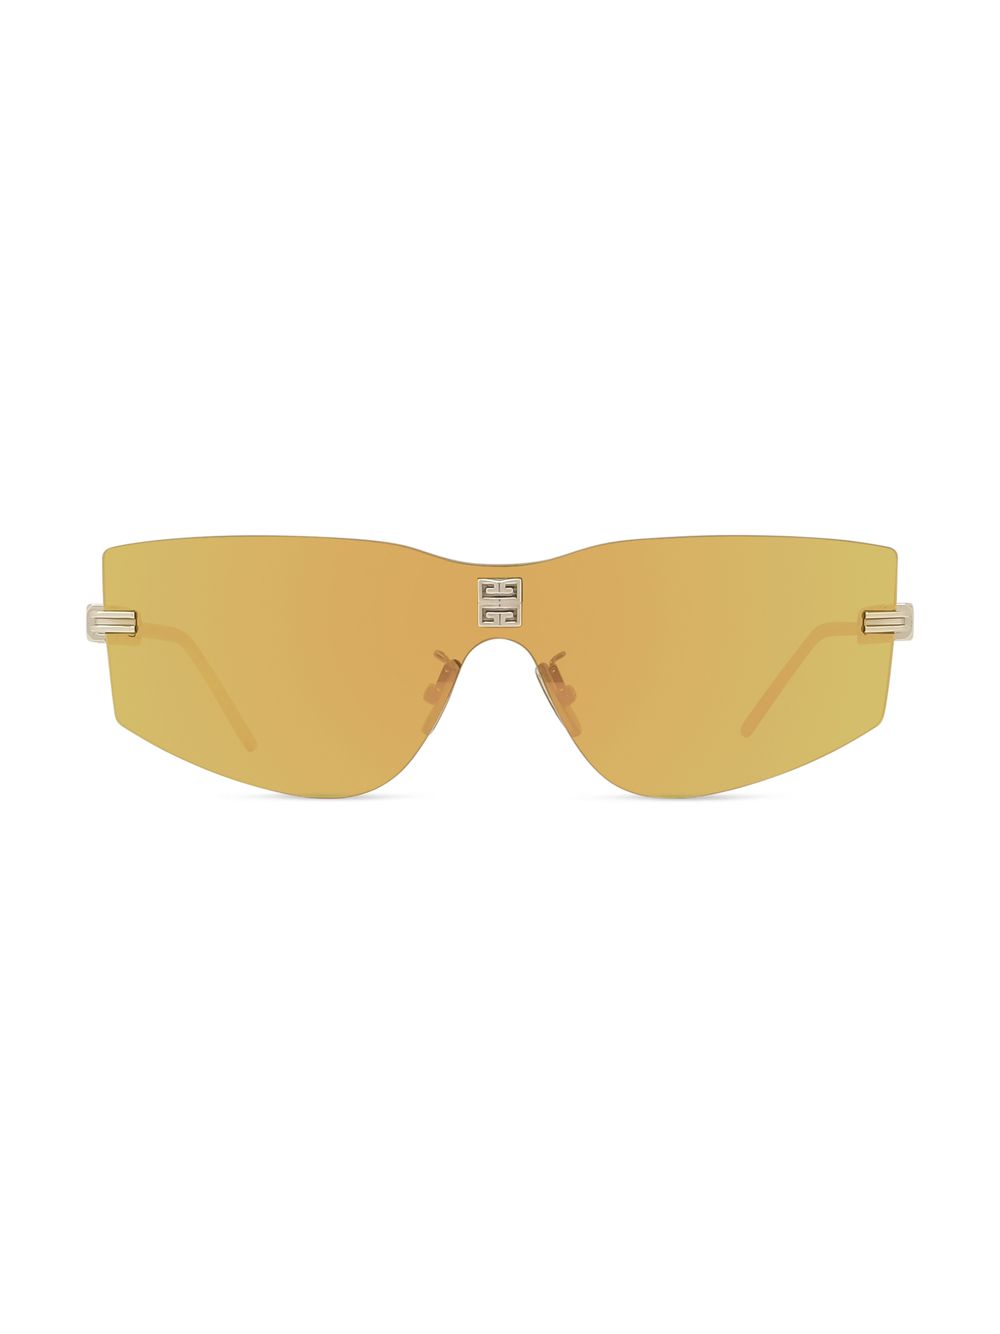 Солнцезащитные очки 4Gem Metal Mask Givenchy, золотой солнцезащитные очки givenchy коричневый золотой